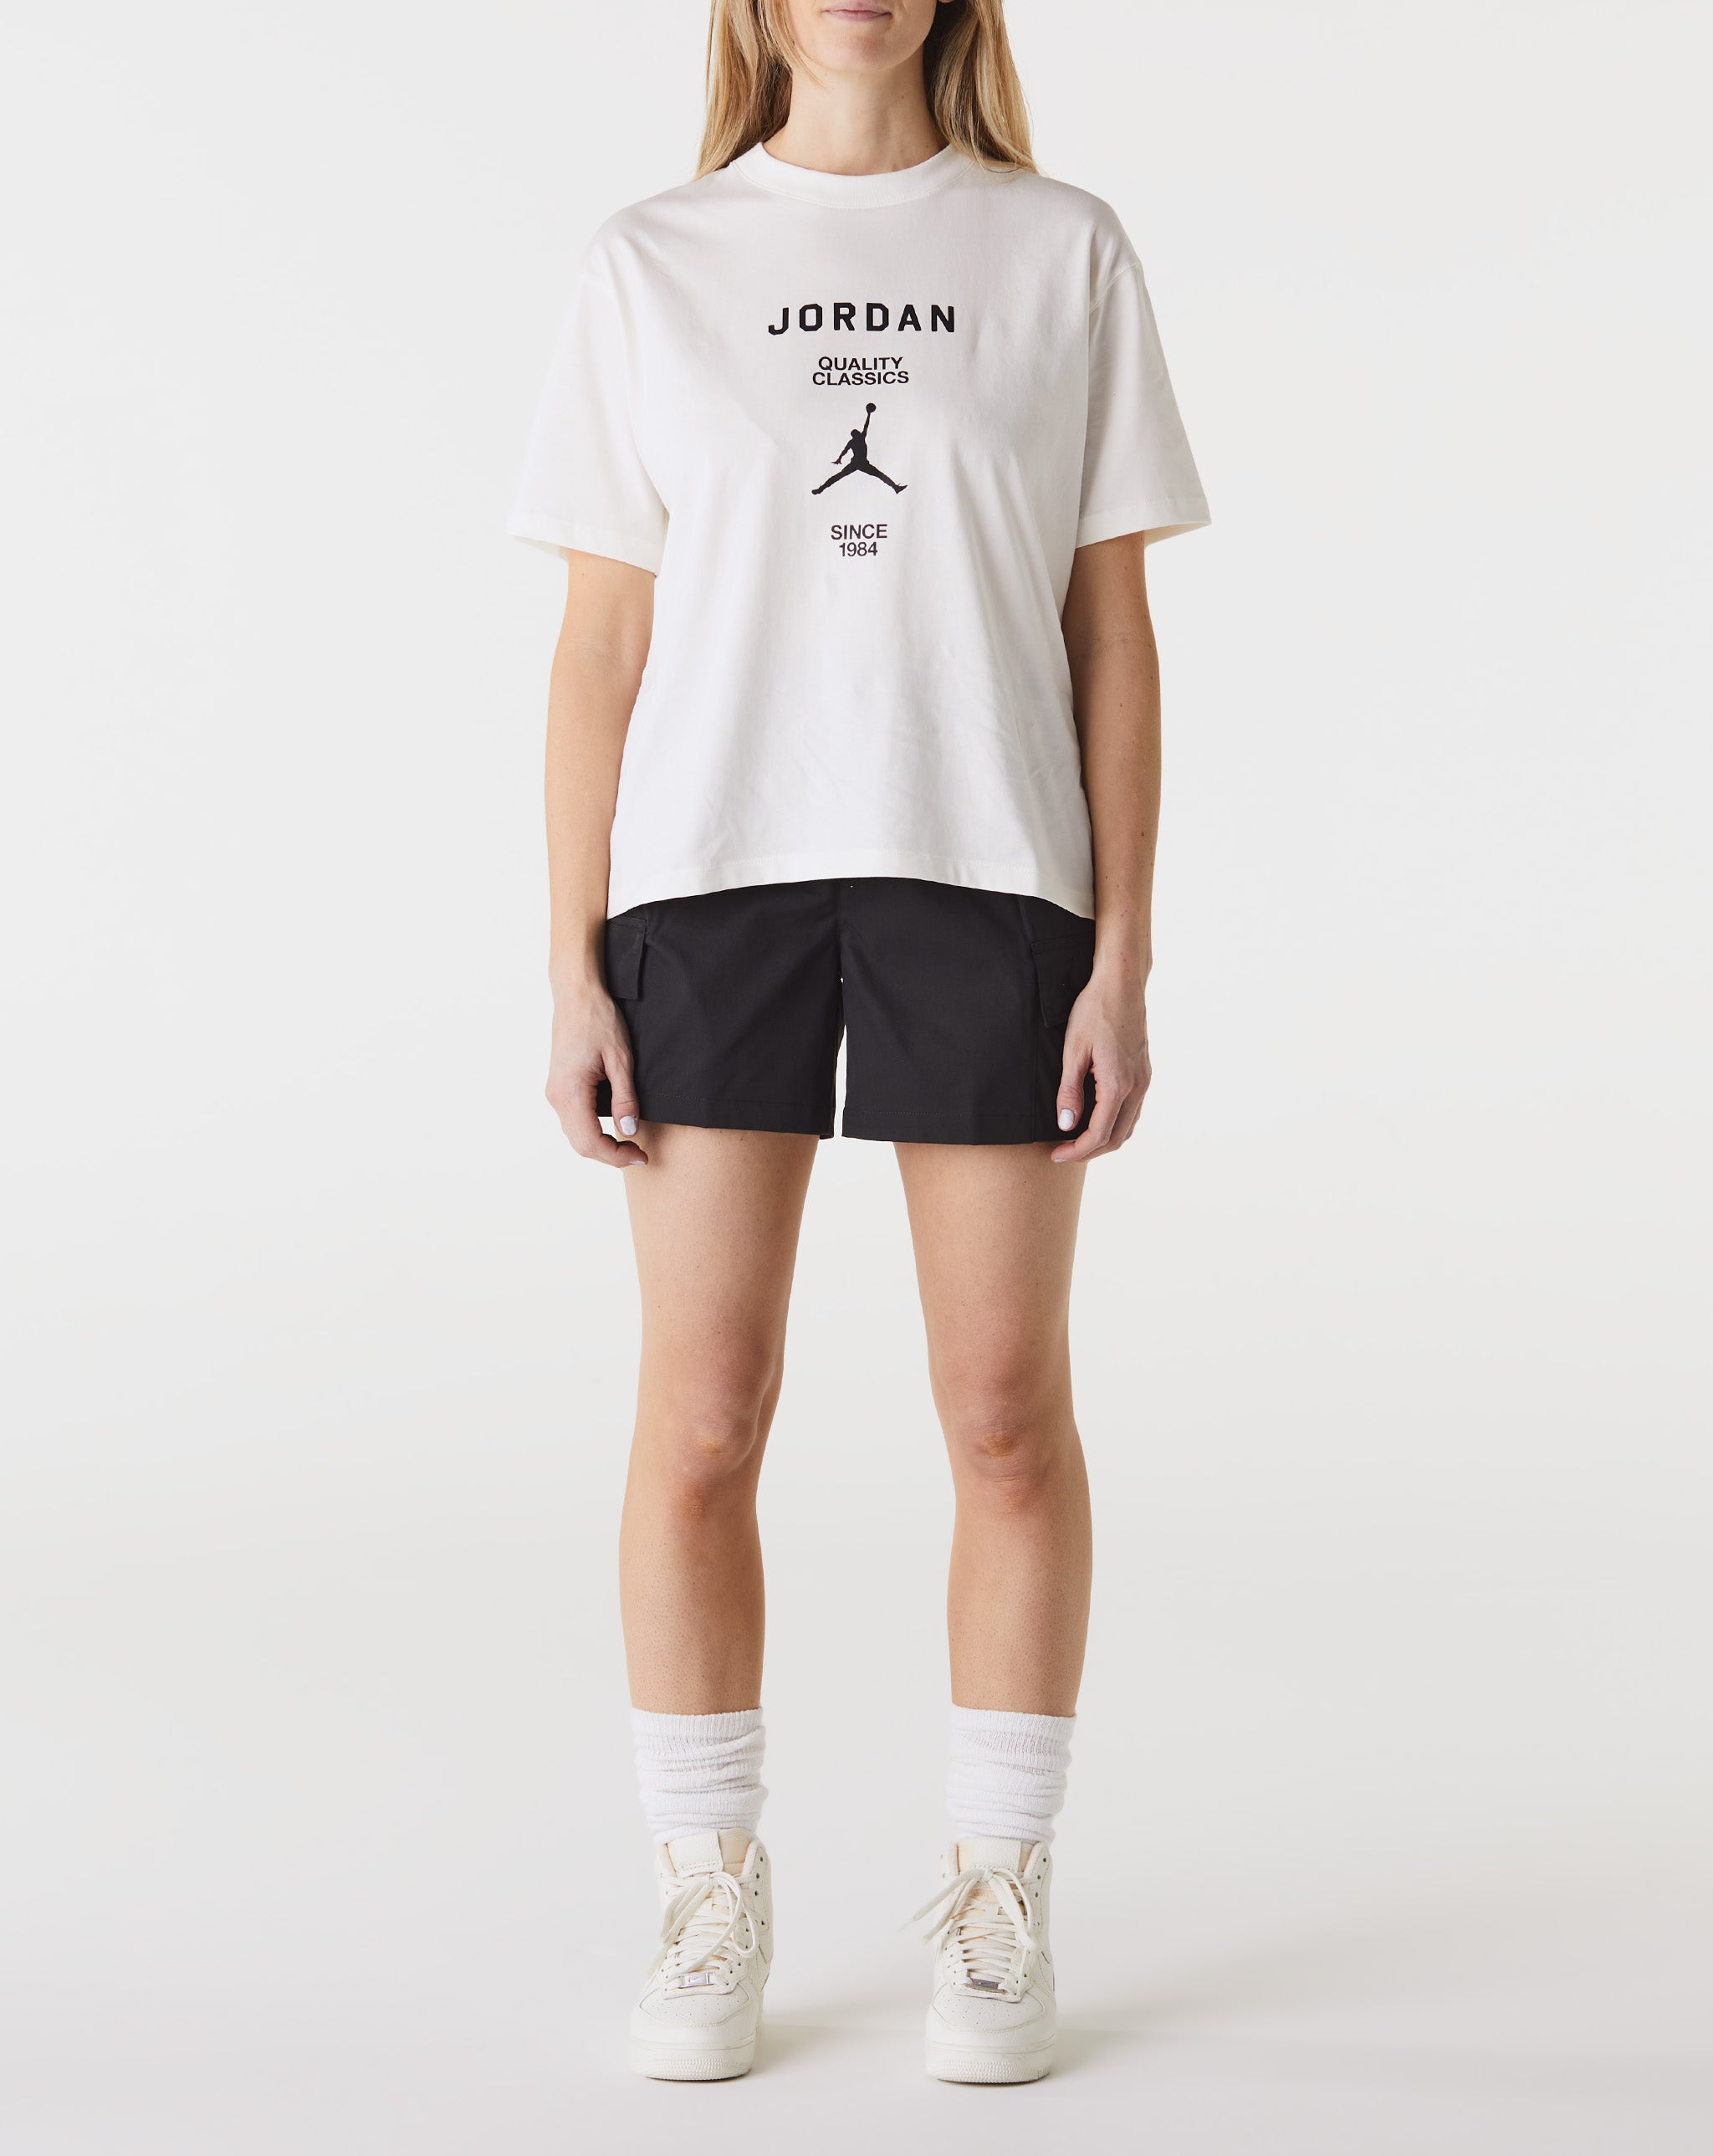 Air Jordan University Women's Jordan University Quality Classics T-Shirt  - Cheap Erlebniswelt-fliegenfischen Jordan outlet